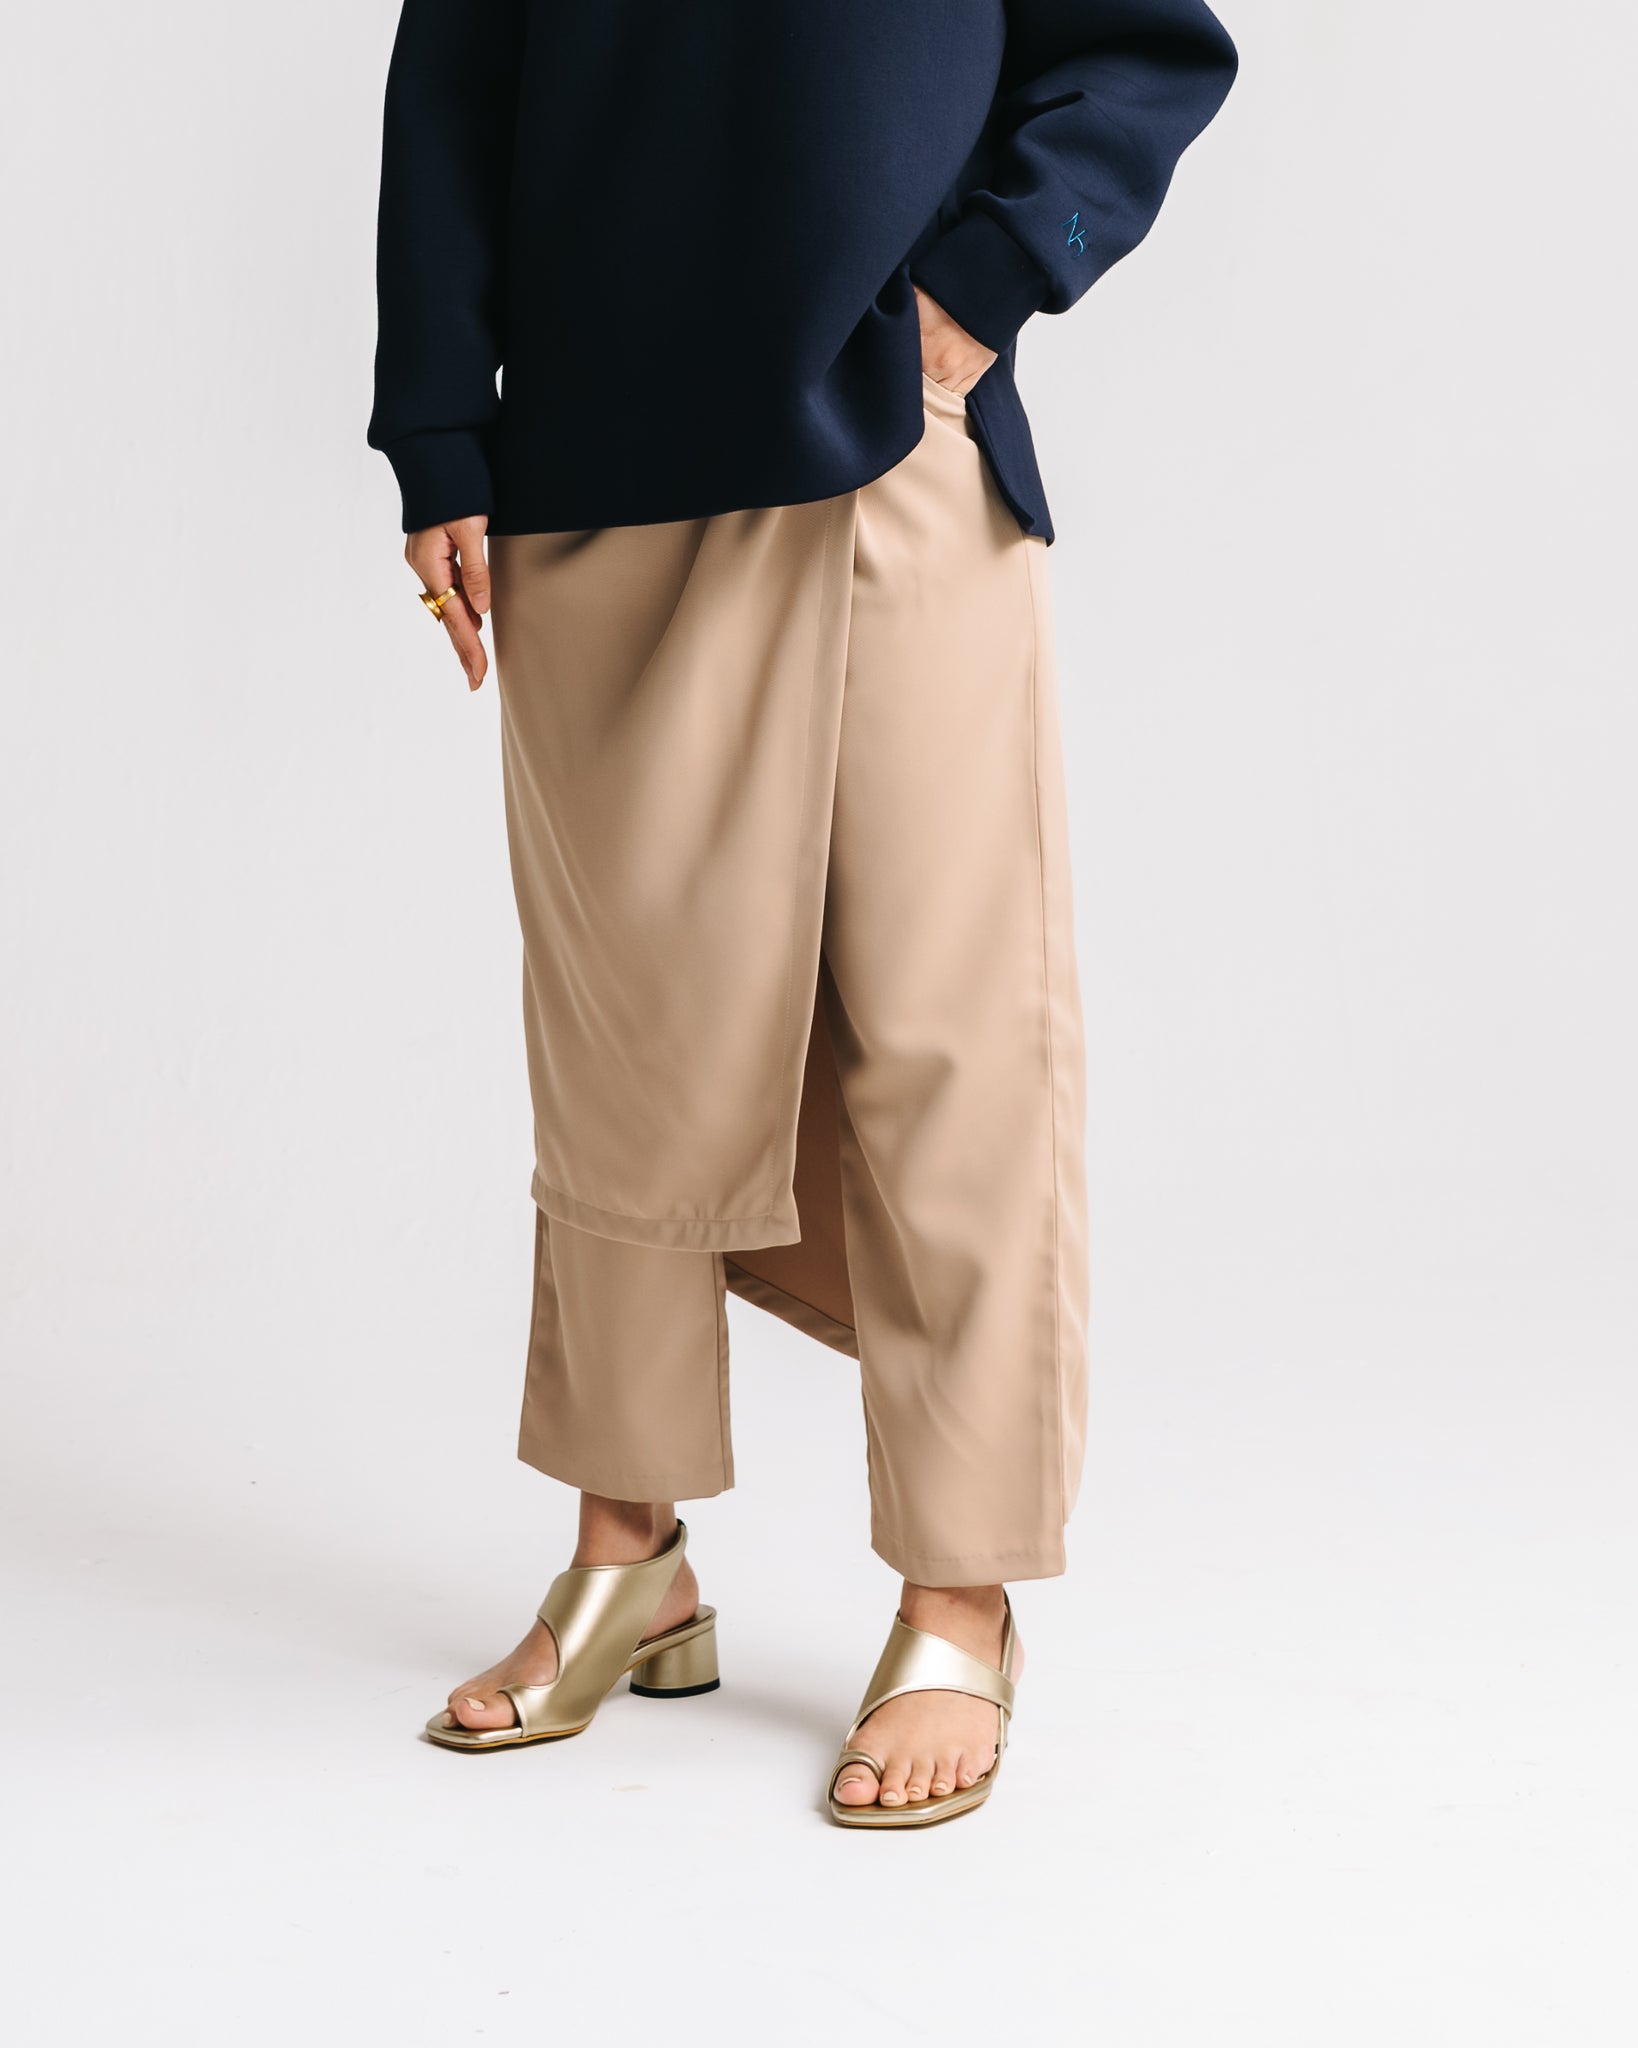 Asymmetrical Skirt Pants (Khaki)